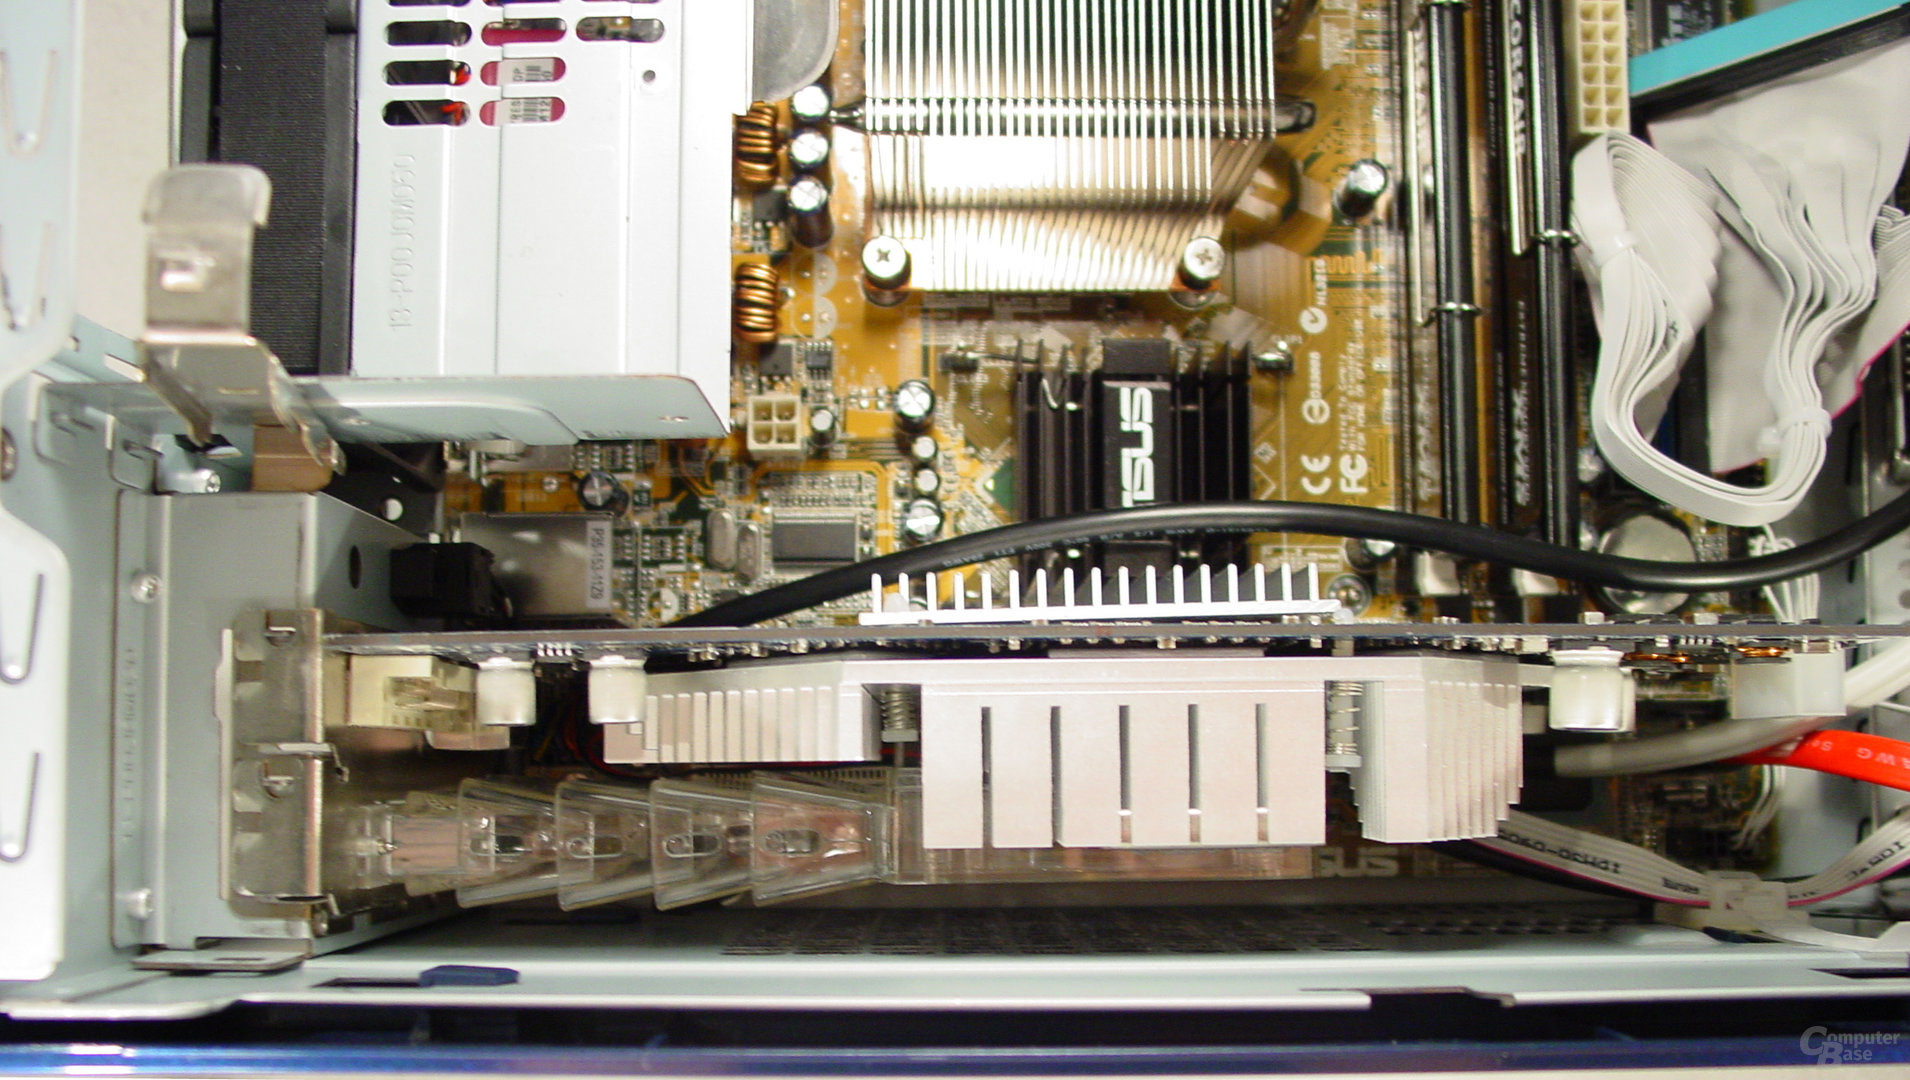 Asus S-presso S1-P111 Deluxe - Inkompatibilität - GeForce FX 5900, bei der das Gehäuse nicht mehr geschlossen werden kann